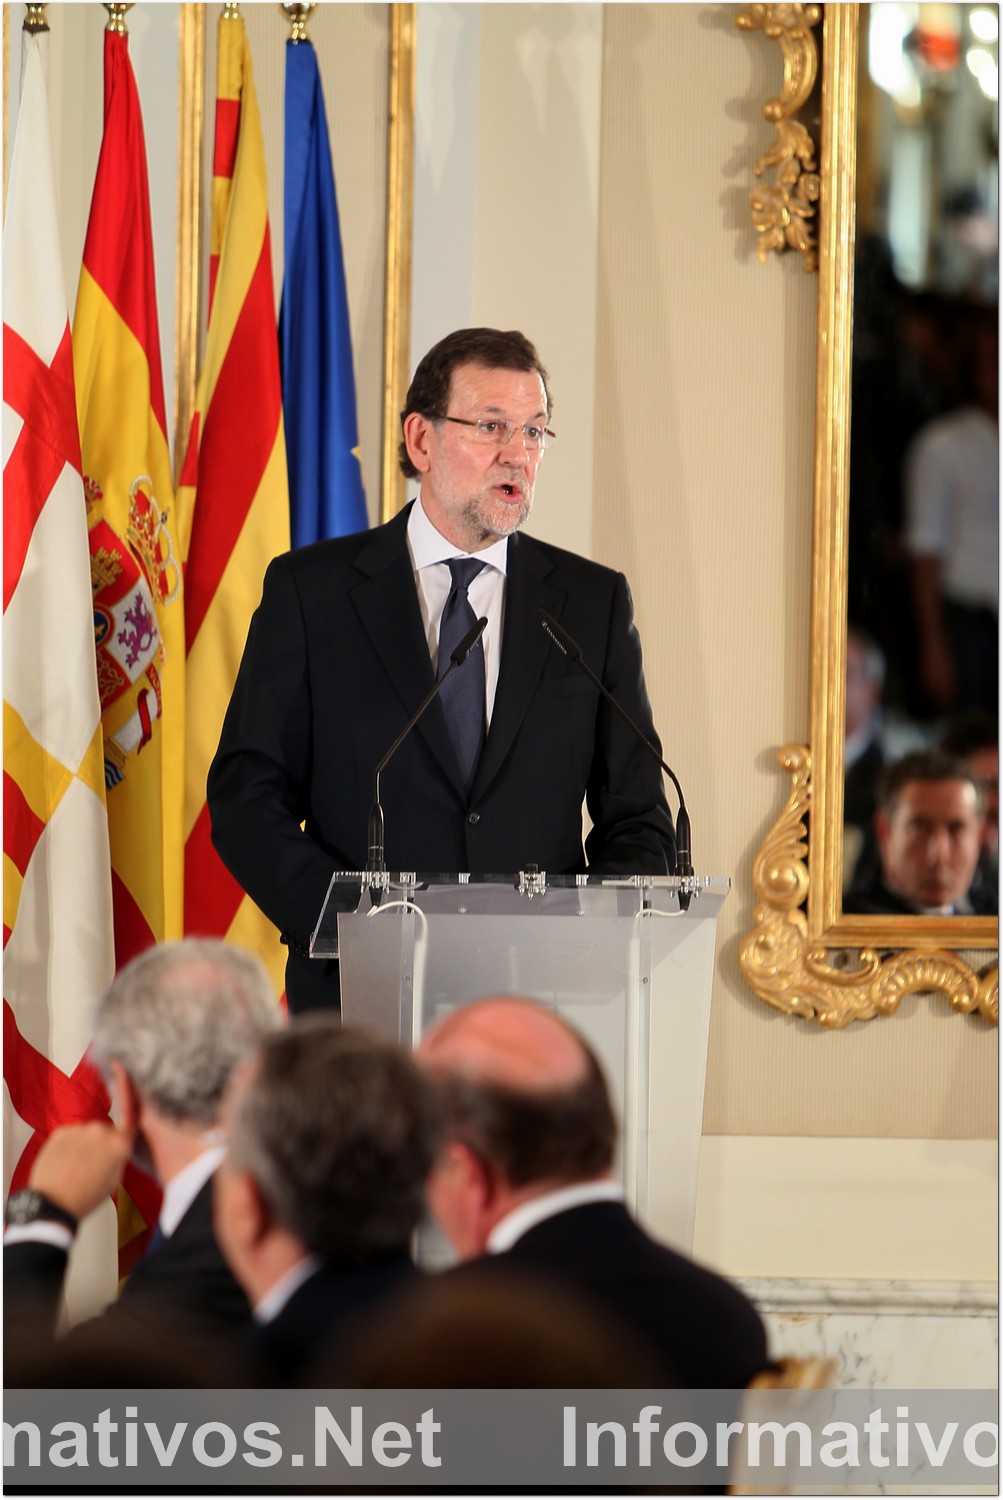 BCN8MAY015.- Almuerzo de Mariano Rajoy con directivos de empresas automovilísticas en el Palacete Albéniz de Barcelona. Mariano Rajoy, Presidente del Gobierno de España